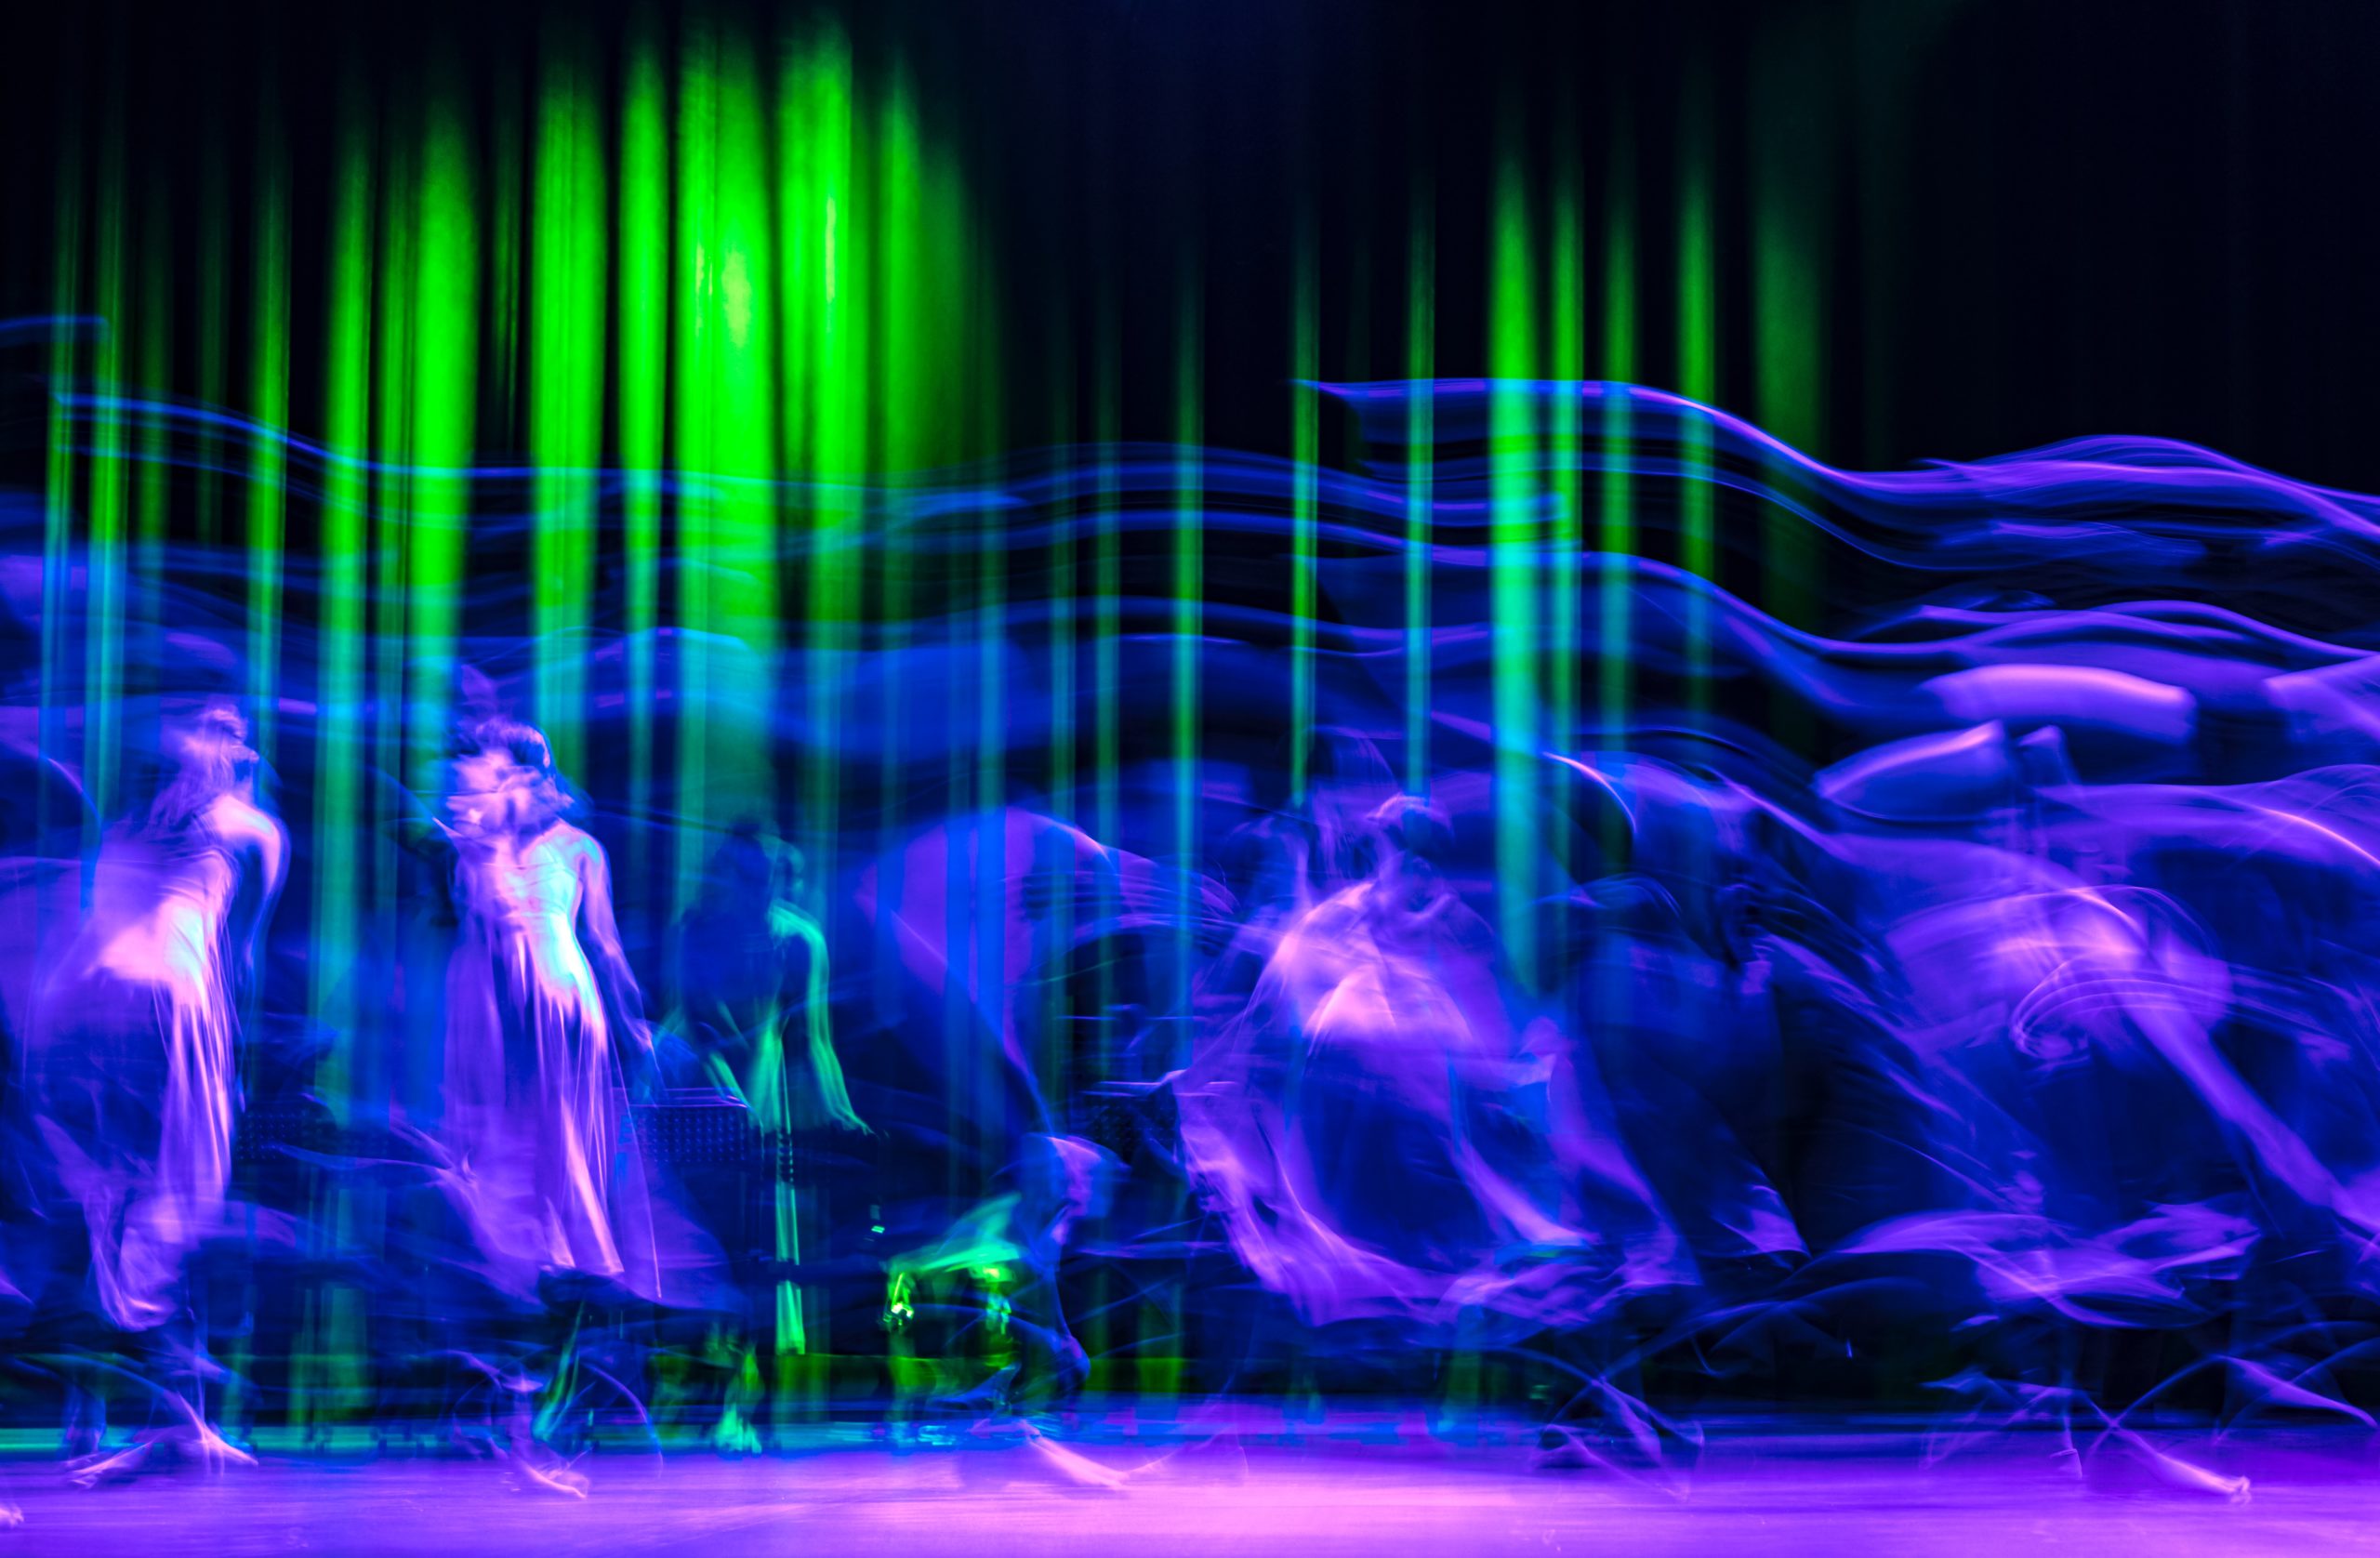 Verschwommenes Bild einer Bühnenszene in Blau, Grün und Lila-Tönen